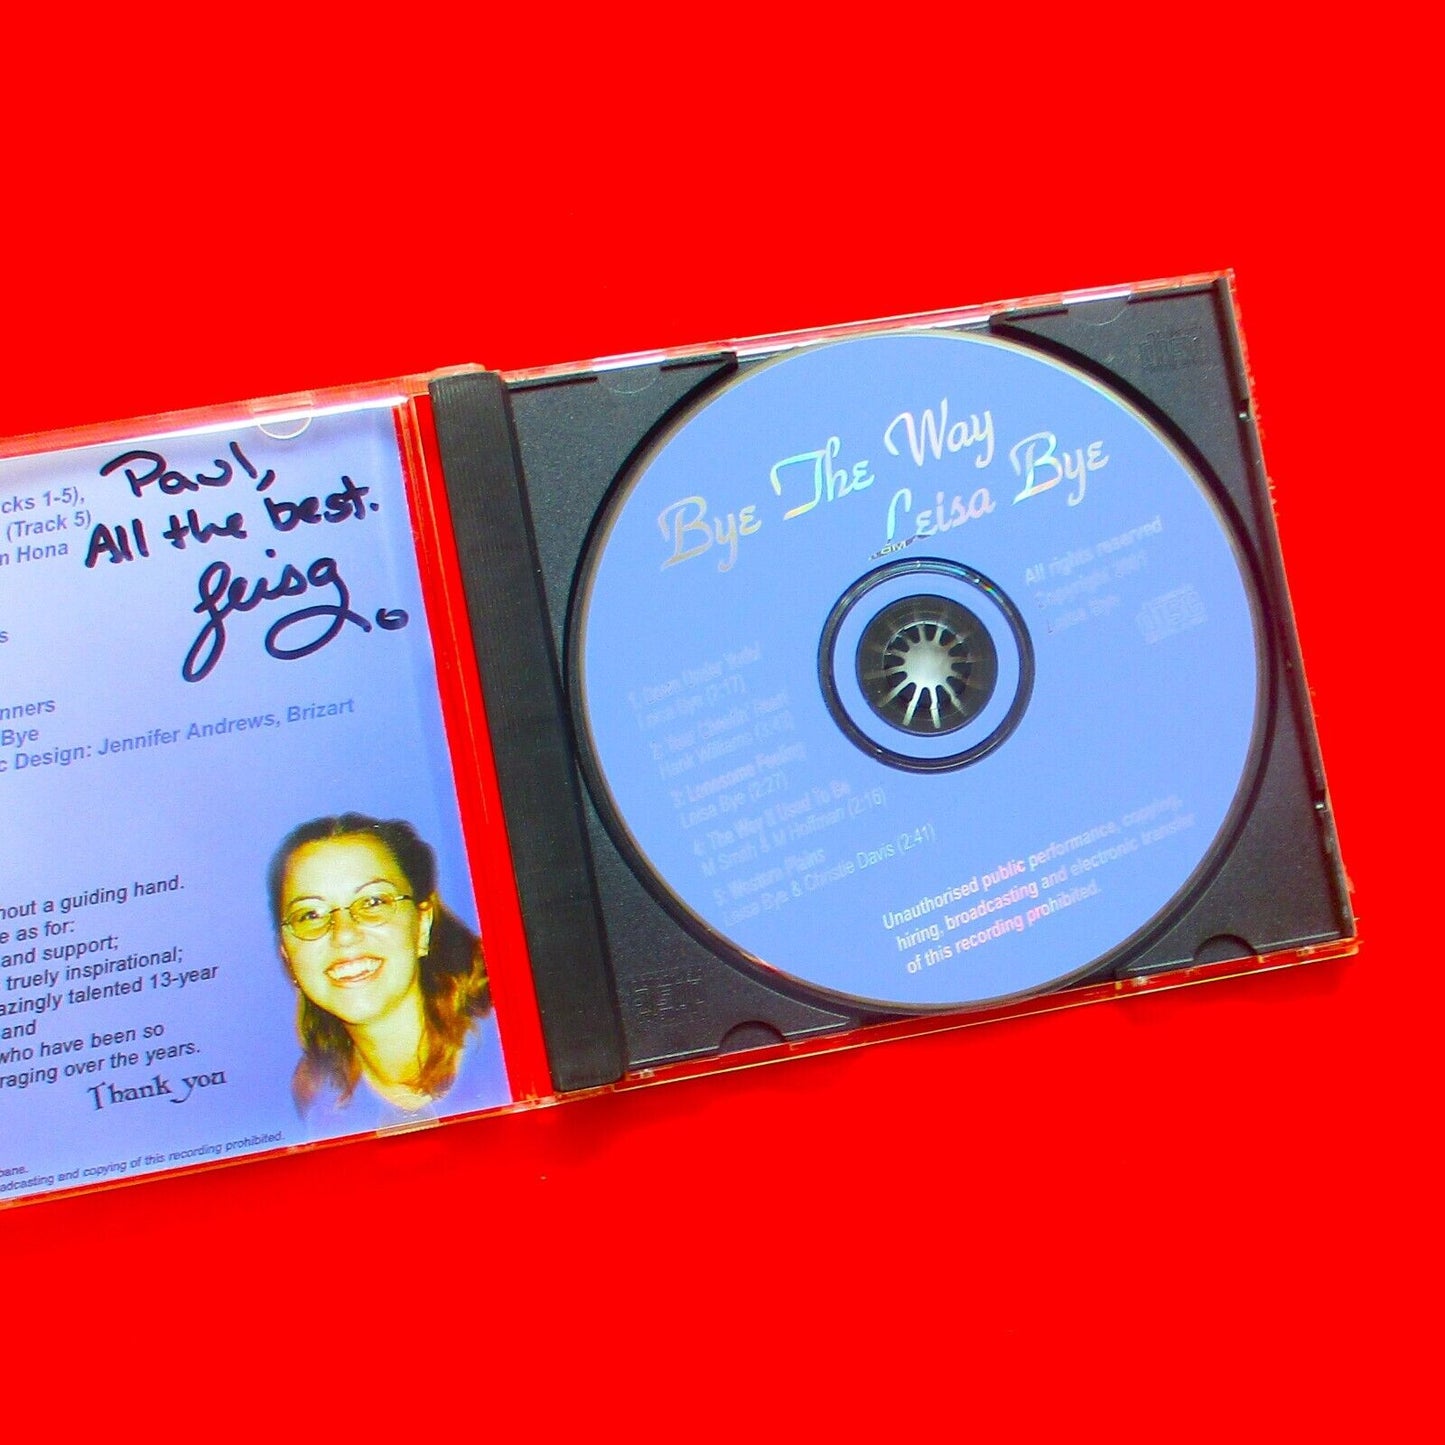 Leisa Bye Bye The Way Australian CD EP Country Self-Released